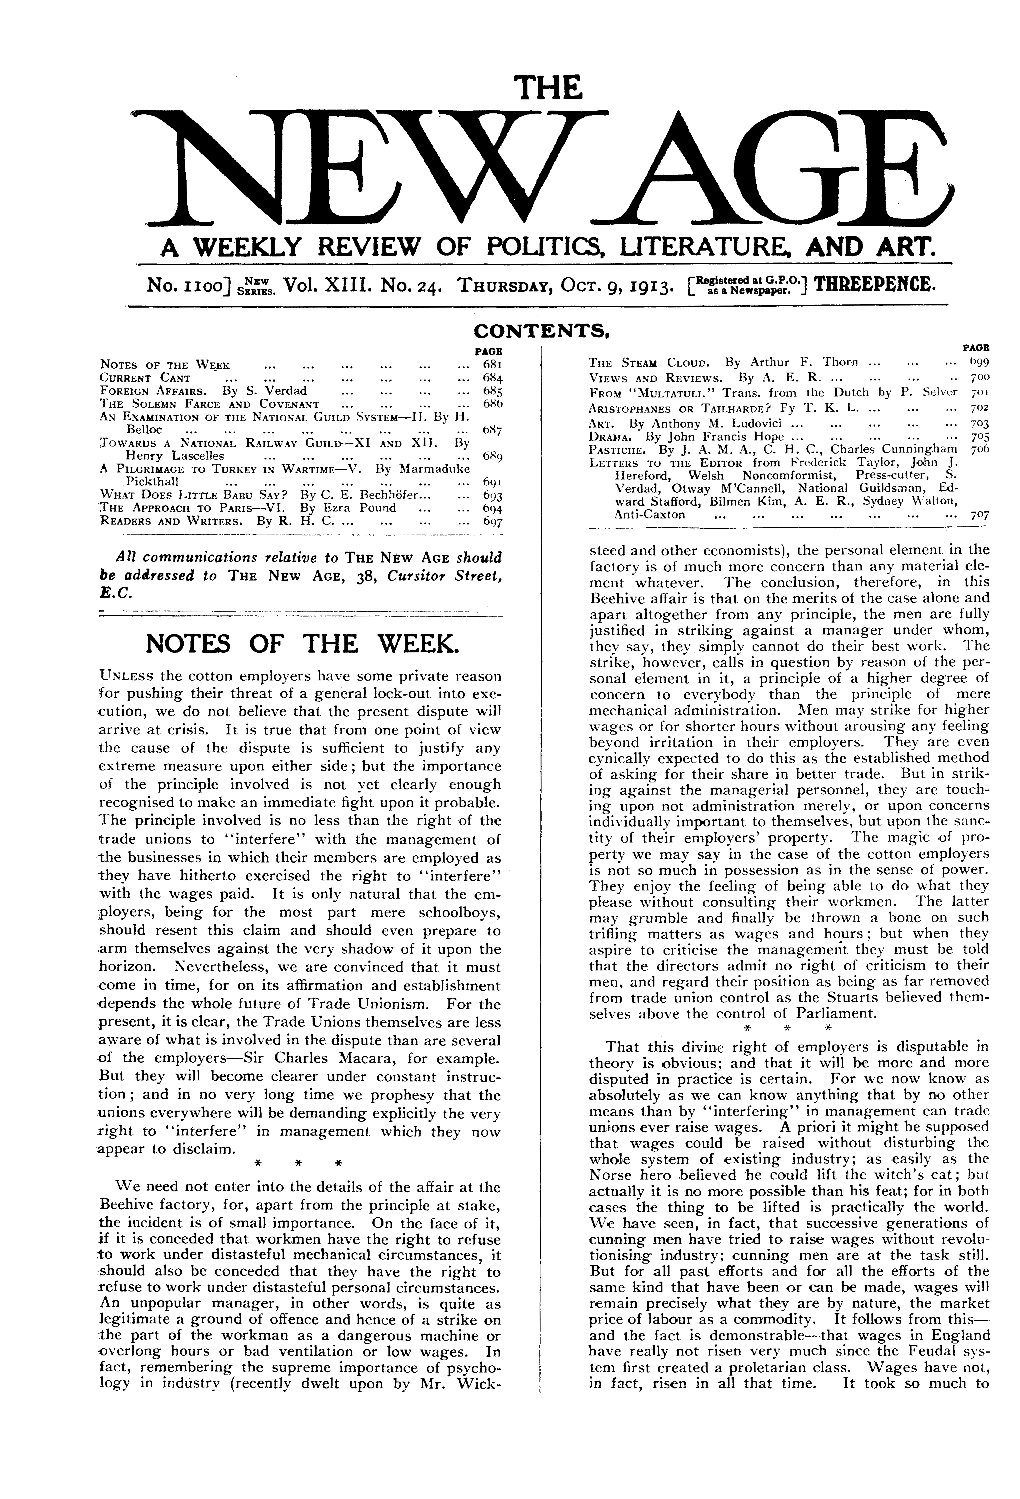 New Age, Vol. 13, No. 24, Oct. 9, 1913